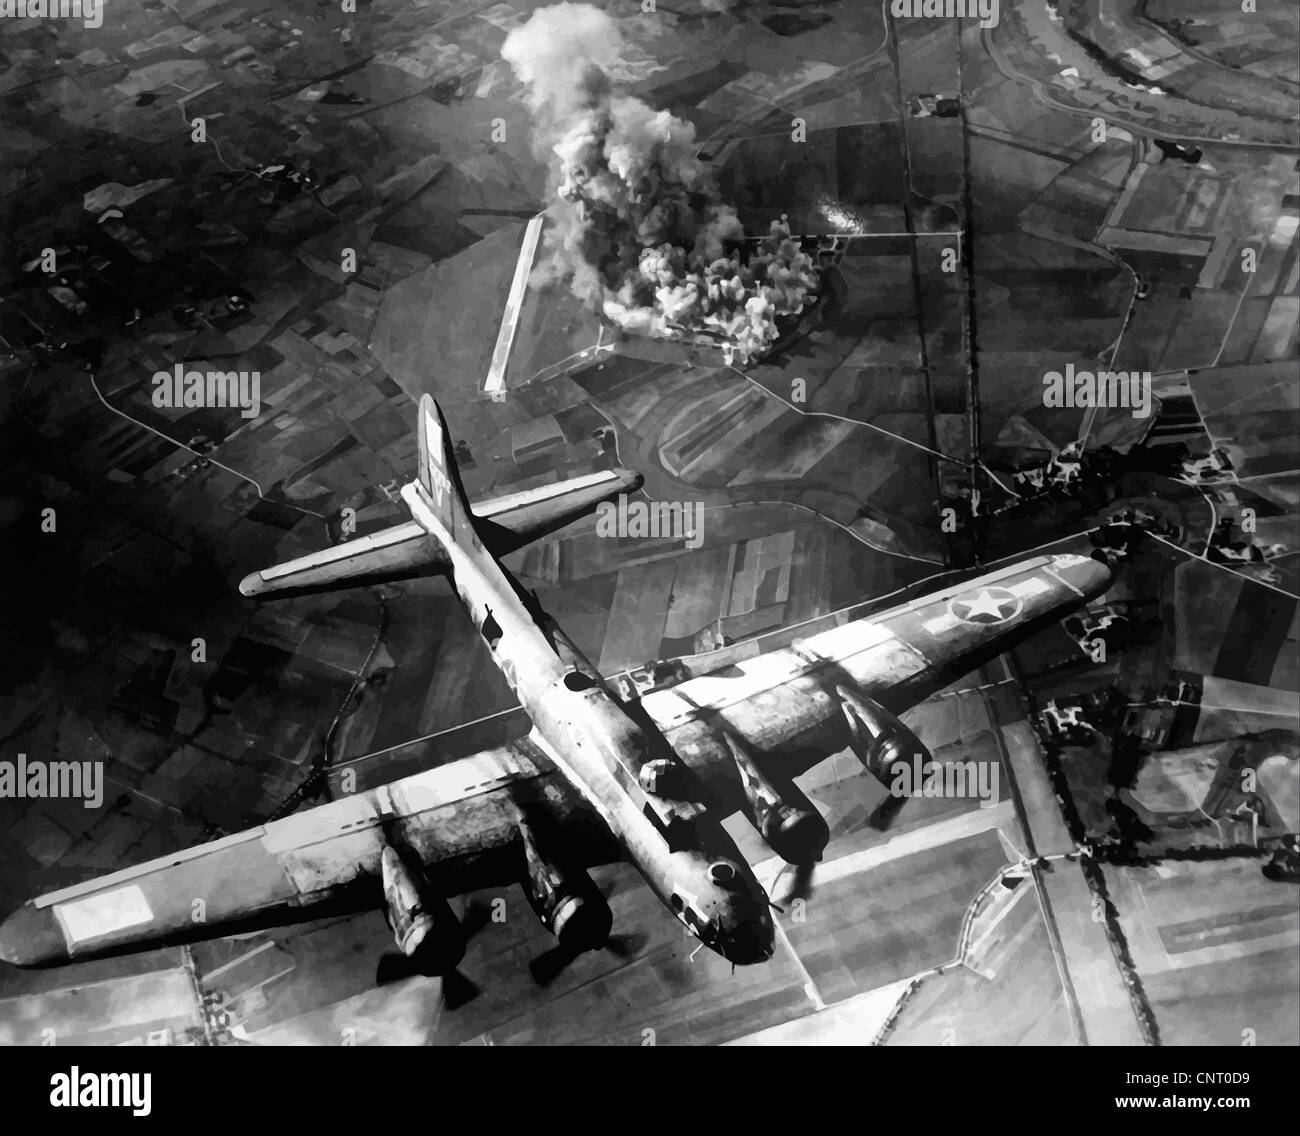 Vecteur restaurés numériquement la photo d'un B-17 Flying Fortress sur une mission de bombardement en Allemagne pendant la Seconde Guerre mondiale. Banque D'Images